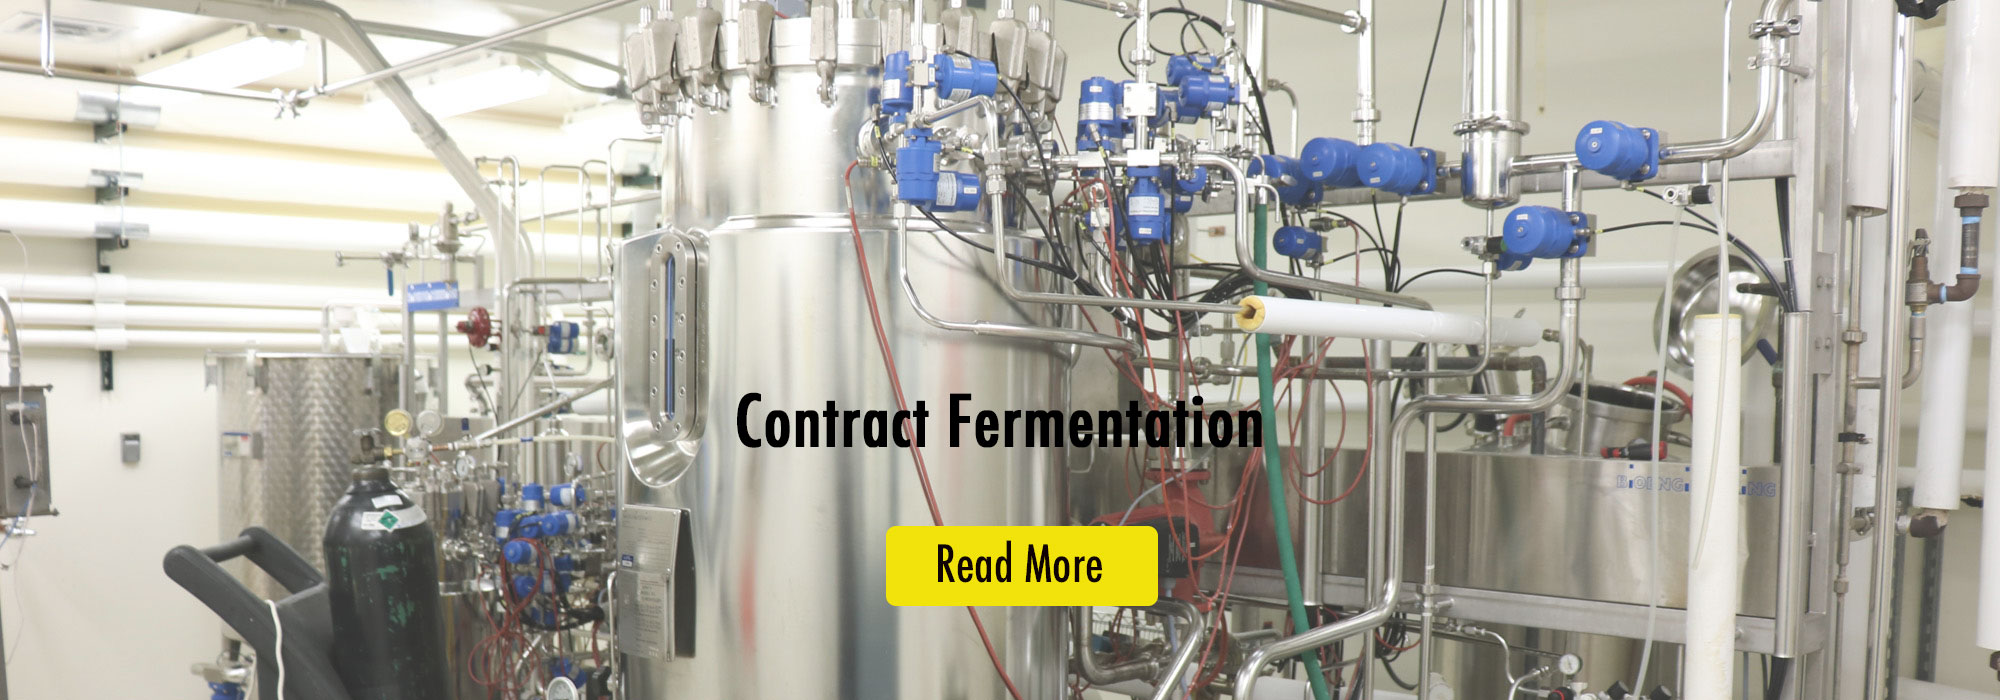 probiotics-contract-fermentation